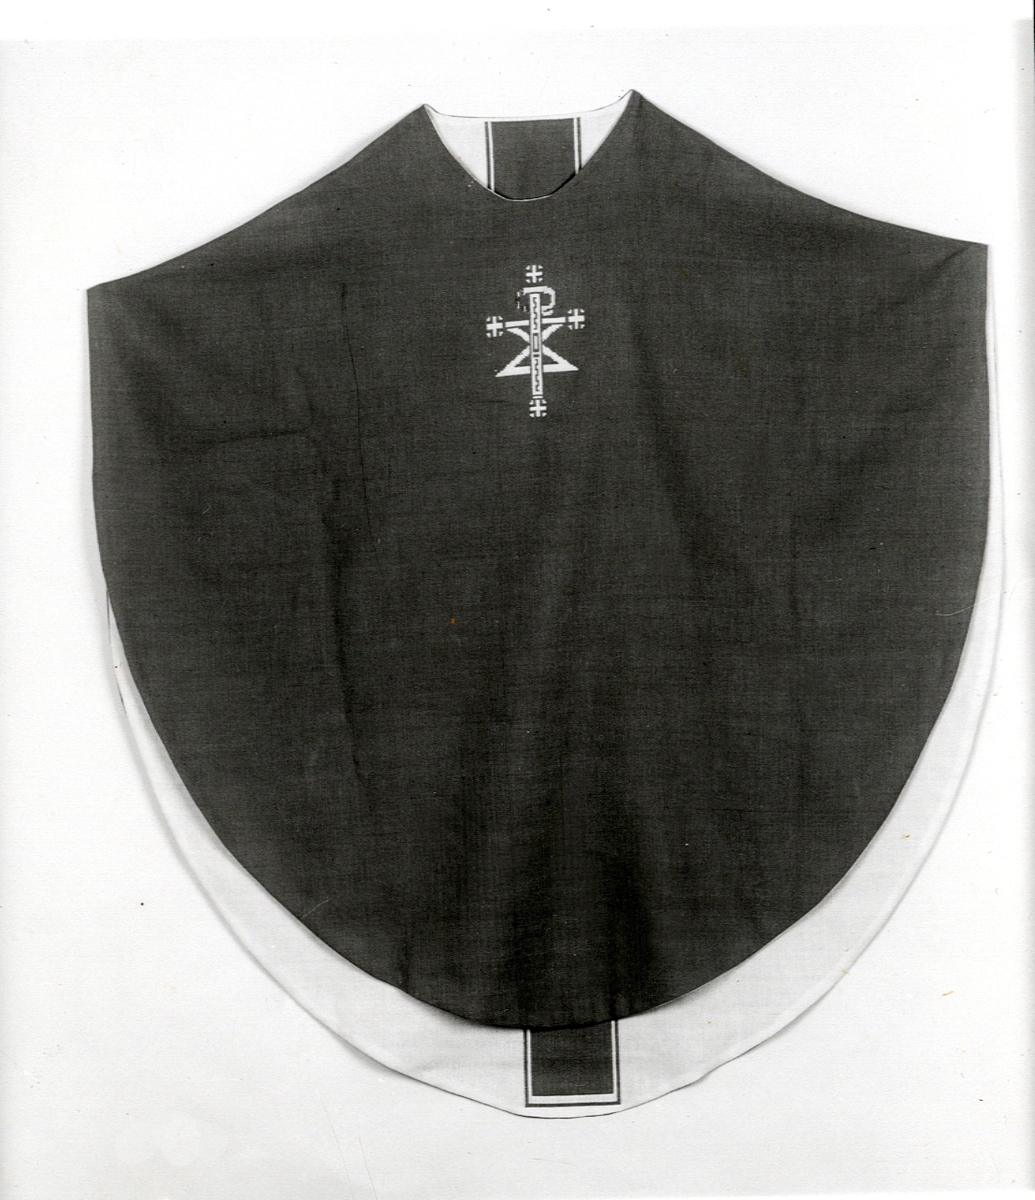 Foto (svart/vitt) av en mörk mässhake (framsidan) med broderat Kristusmonogram i ljusare färg. 

Inskrivet i huvudbok 1983.